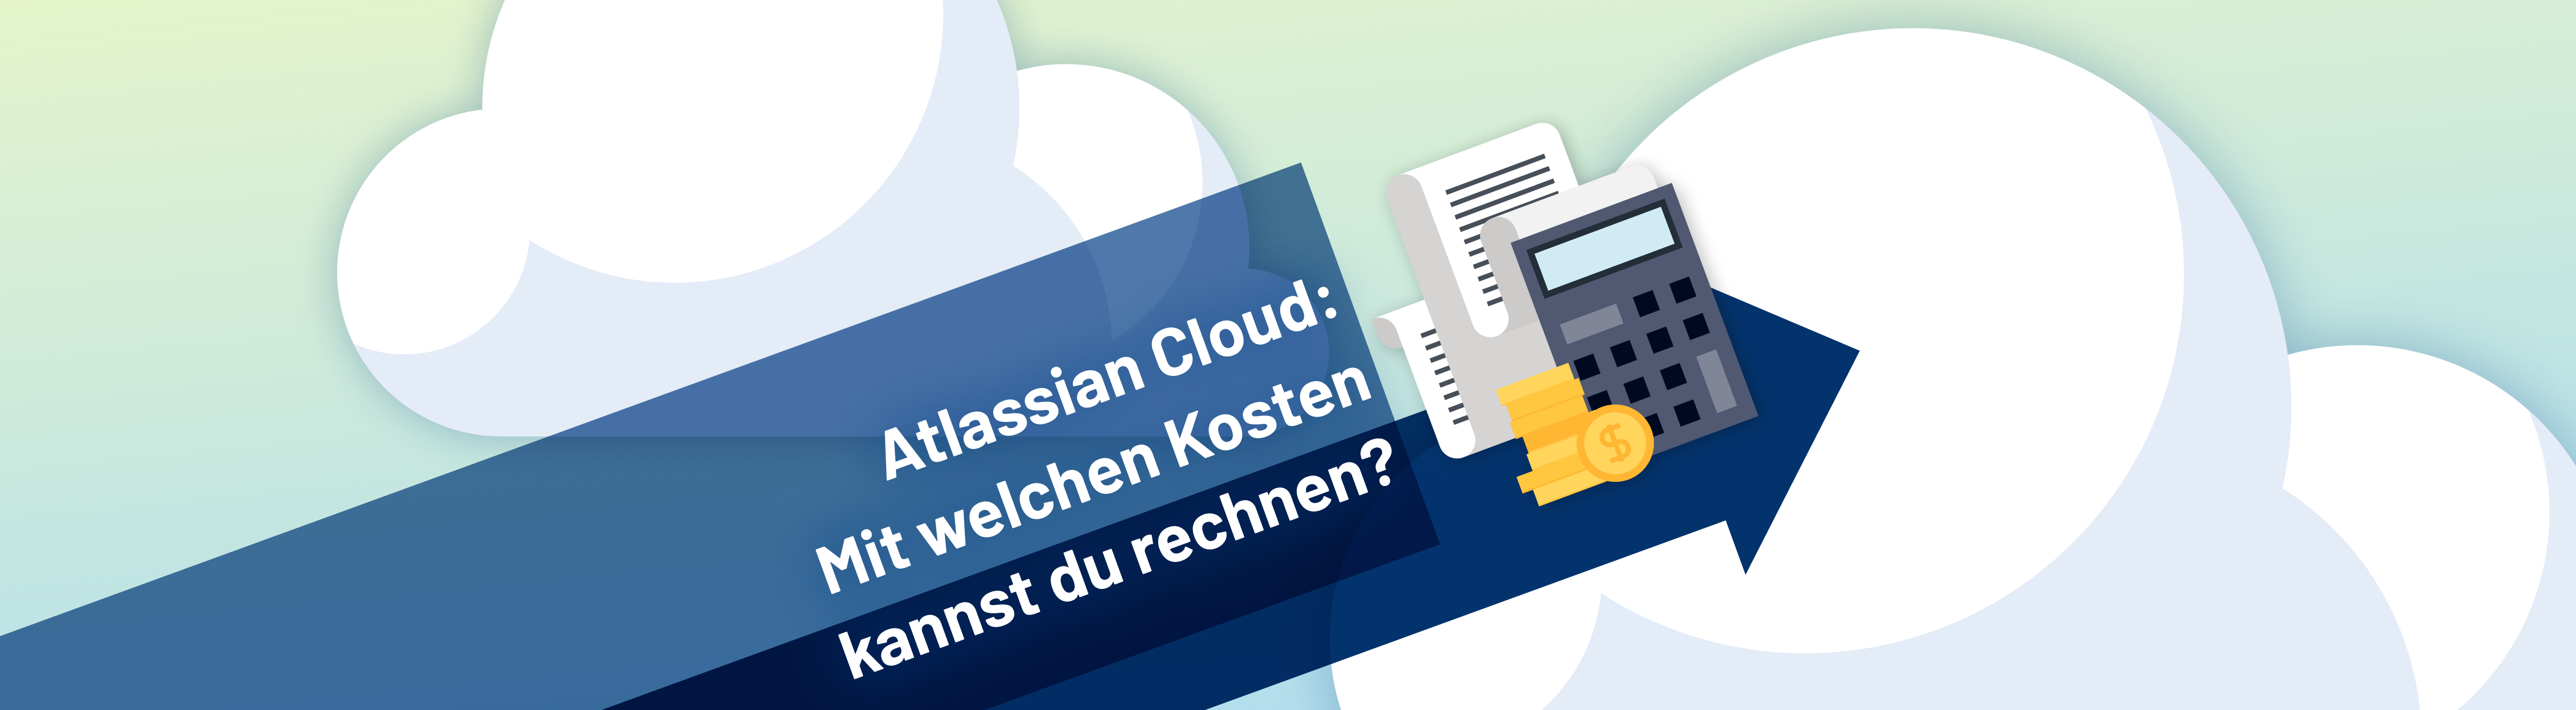 Eine Grafik, die einen Taschenrechner und Münzgeld zeigt. Daneben steht "Atlassian Cloud: Mit welchen Kosten kannst du rechnen?"